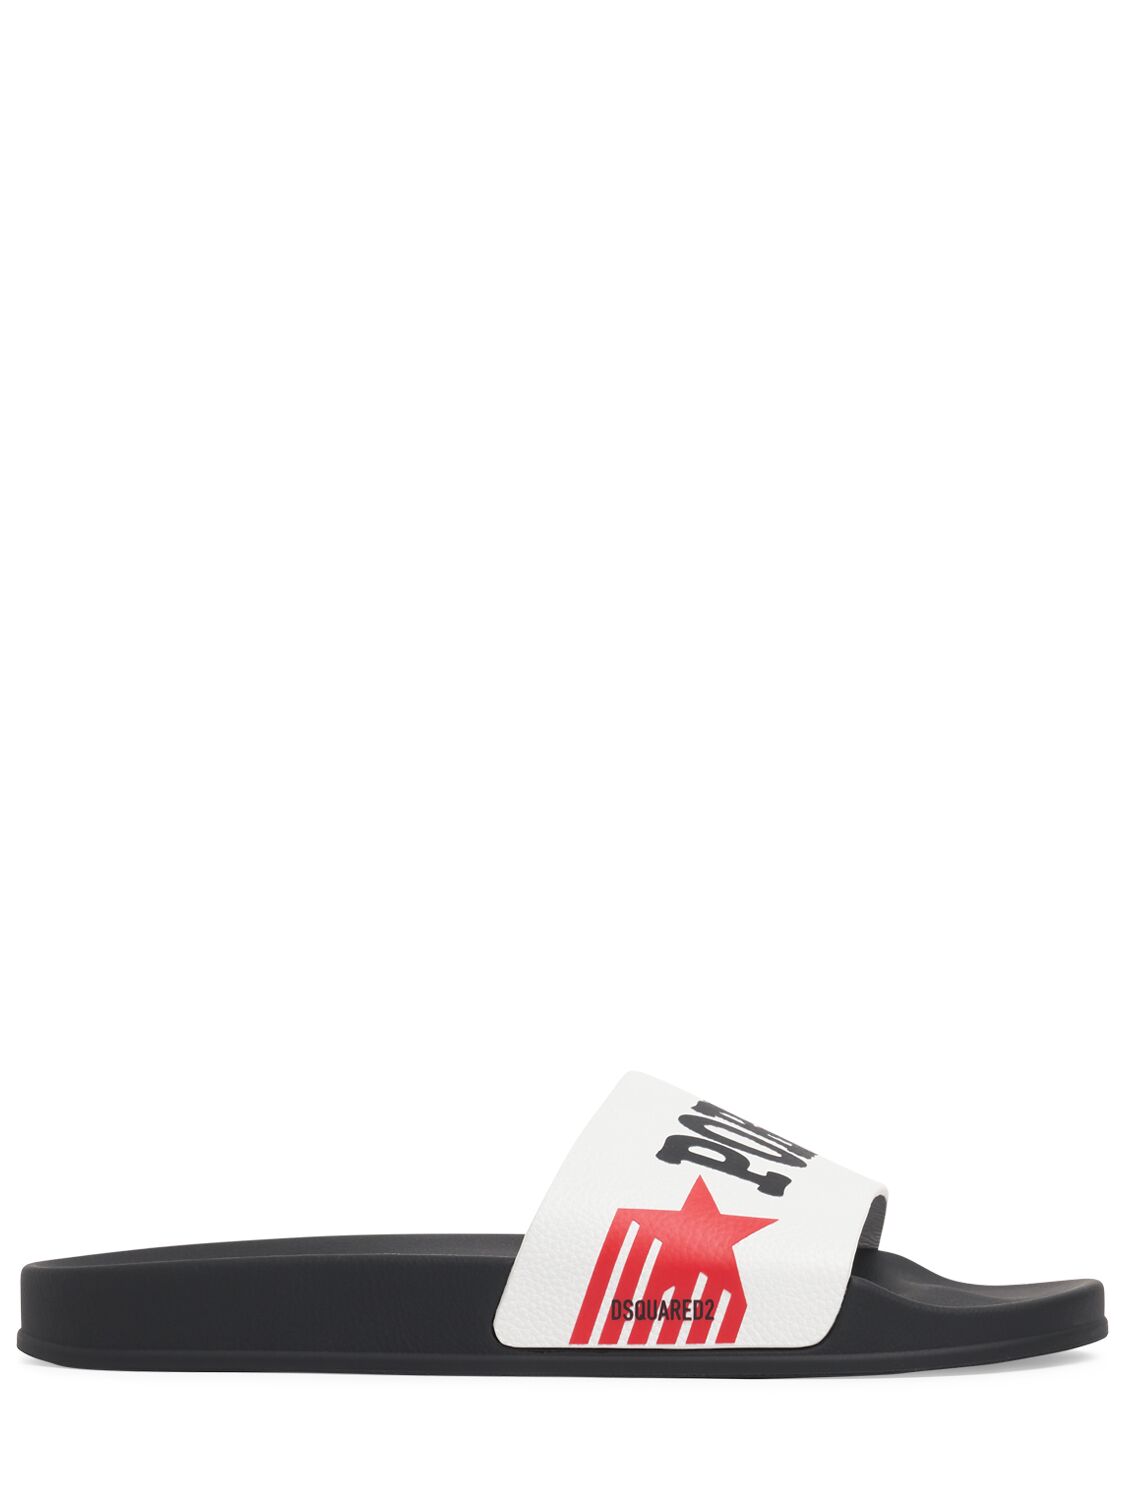 Shop Dsquared2 Rocco Siffredi Slide Sandals In White,red